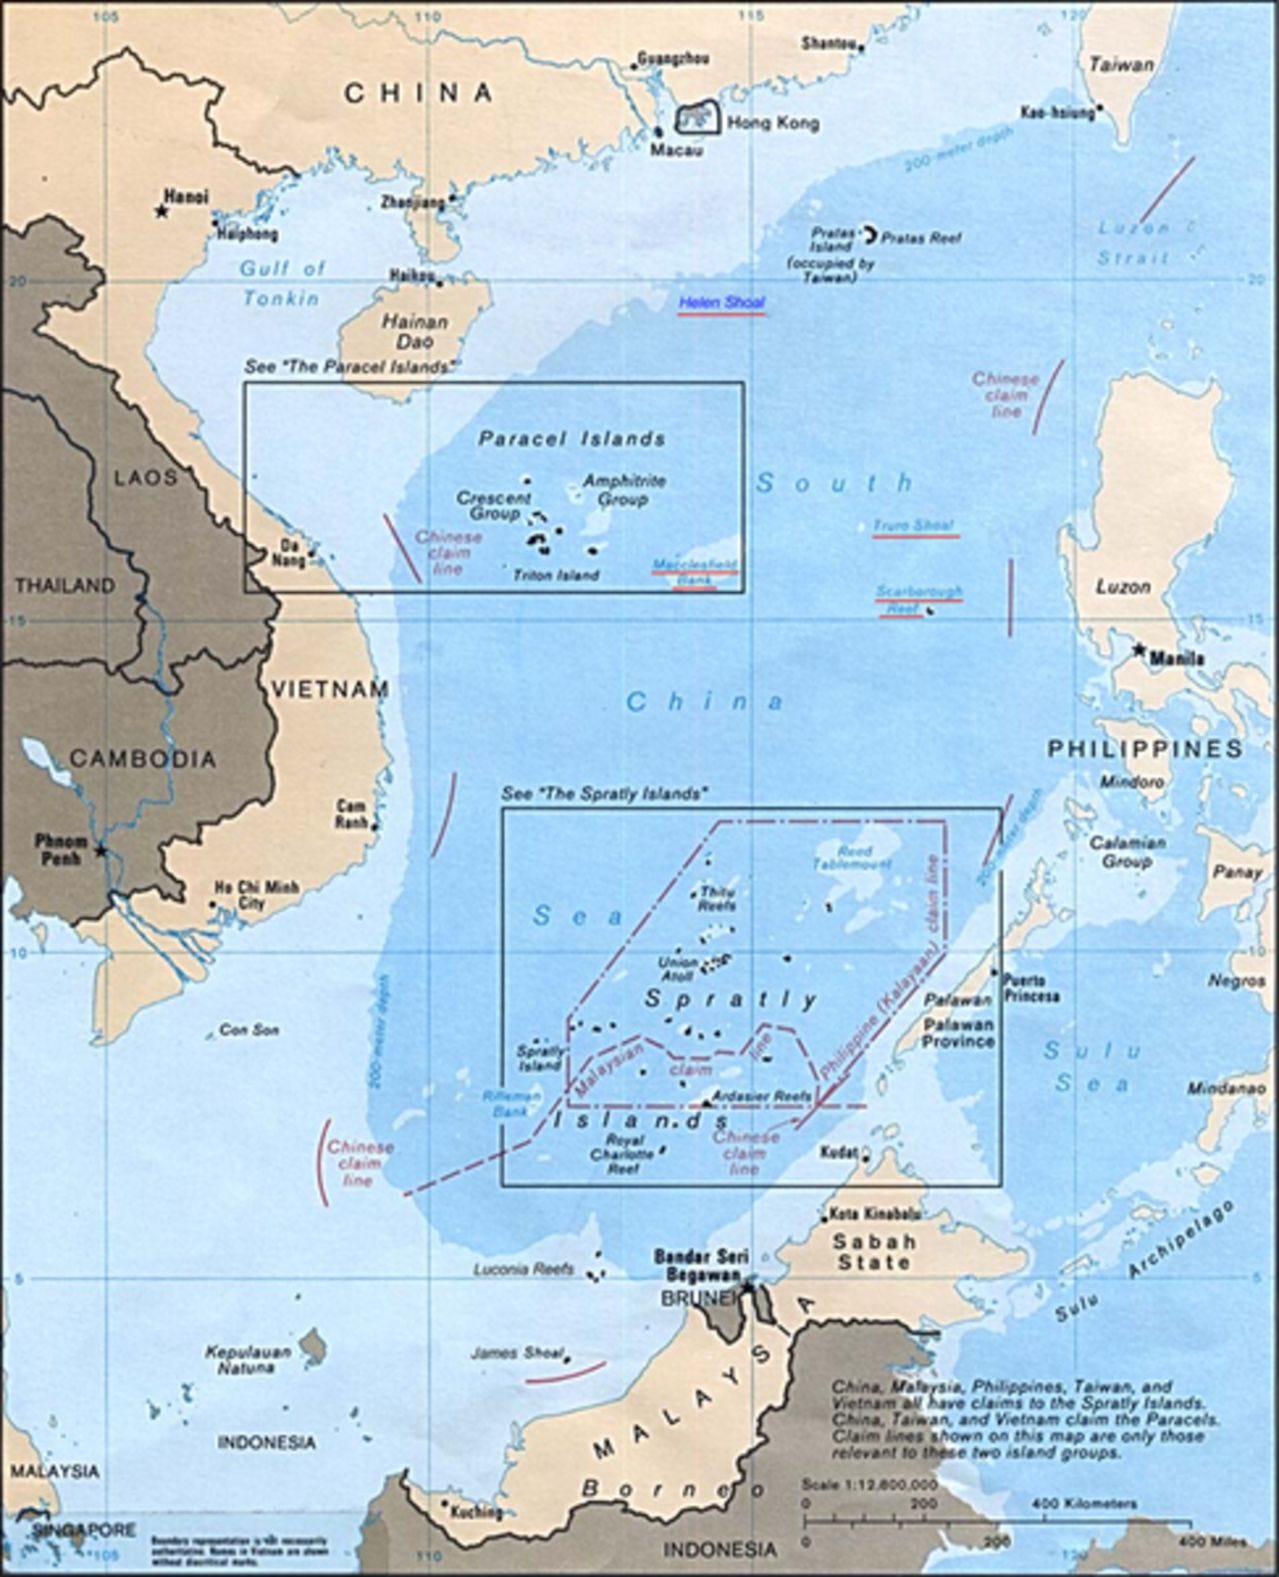 Islas en conflicto en Sudasia- Spratley,Paracel - conflictos,  documentacion, acuerdos y articulos -Ahora administradas desde la Isla de  Hainan, China Abr 2020